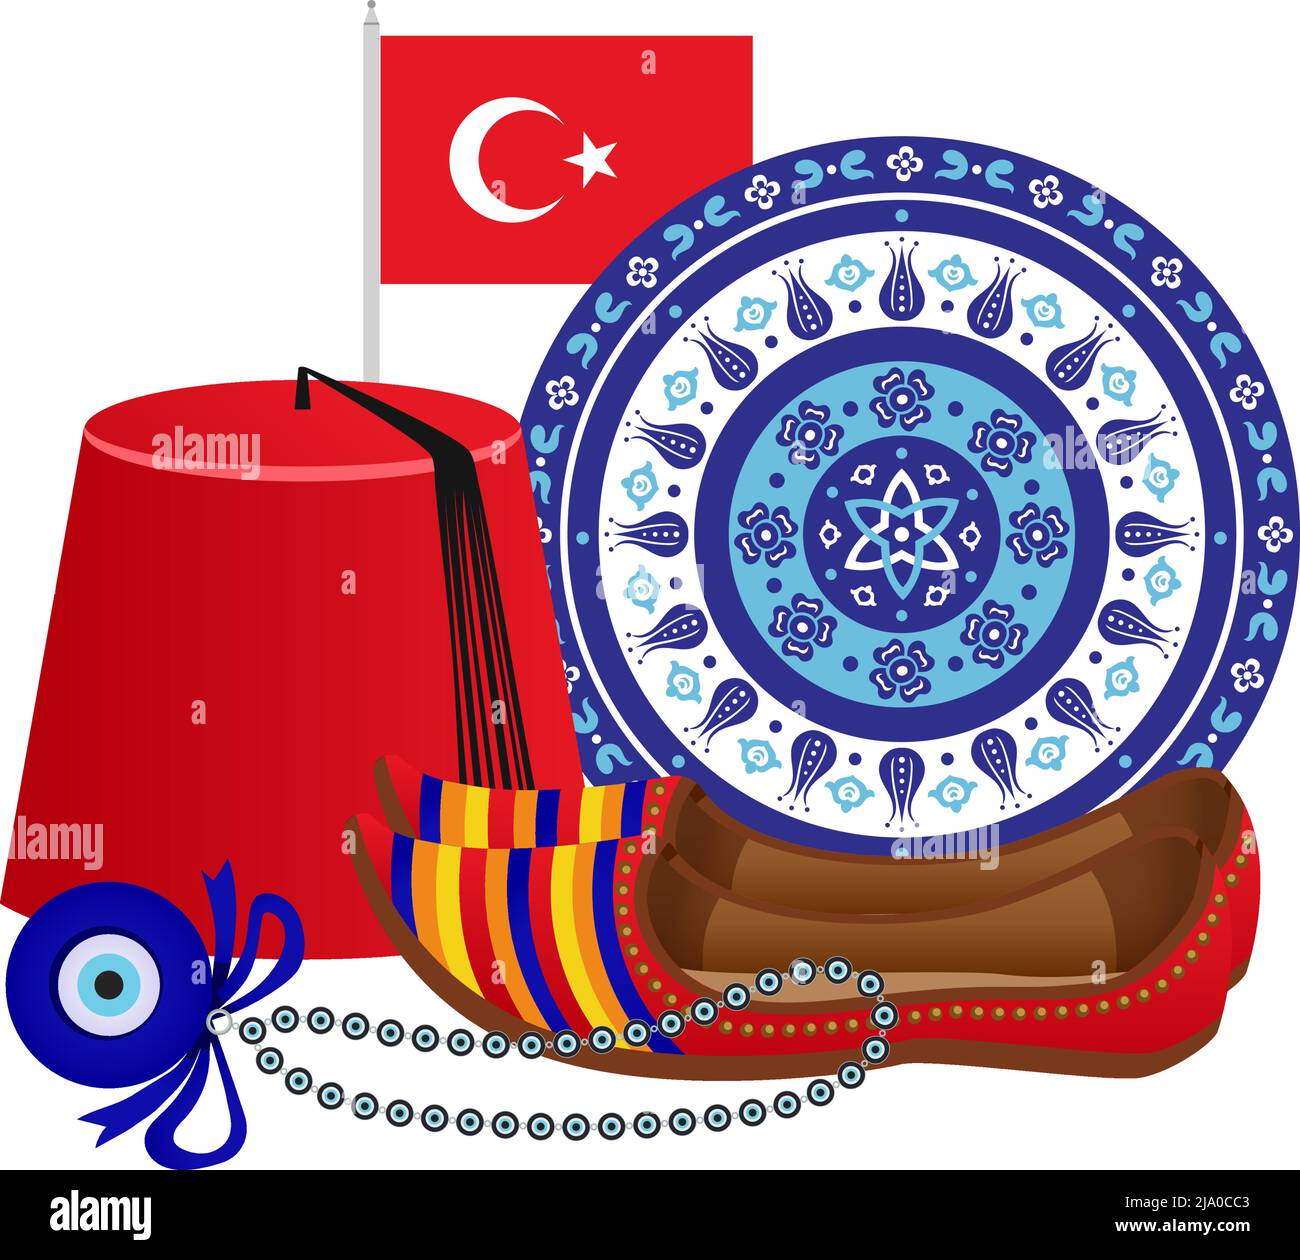 Istanbul turchia turismo composizione di viaggio con immagini isolate di simboli tradizionali turchi illustrazione vettoriale Illustrazione Vettoriale